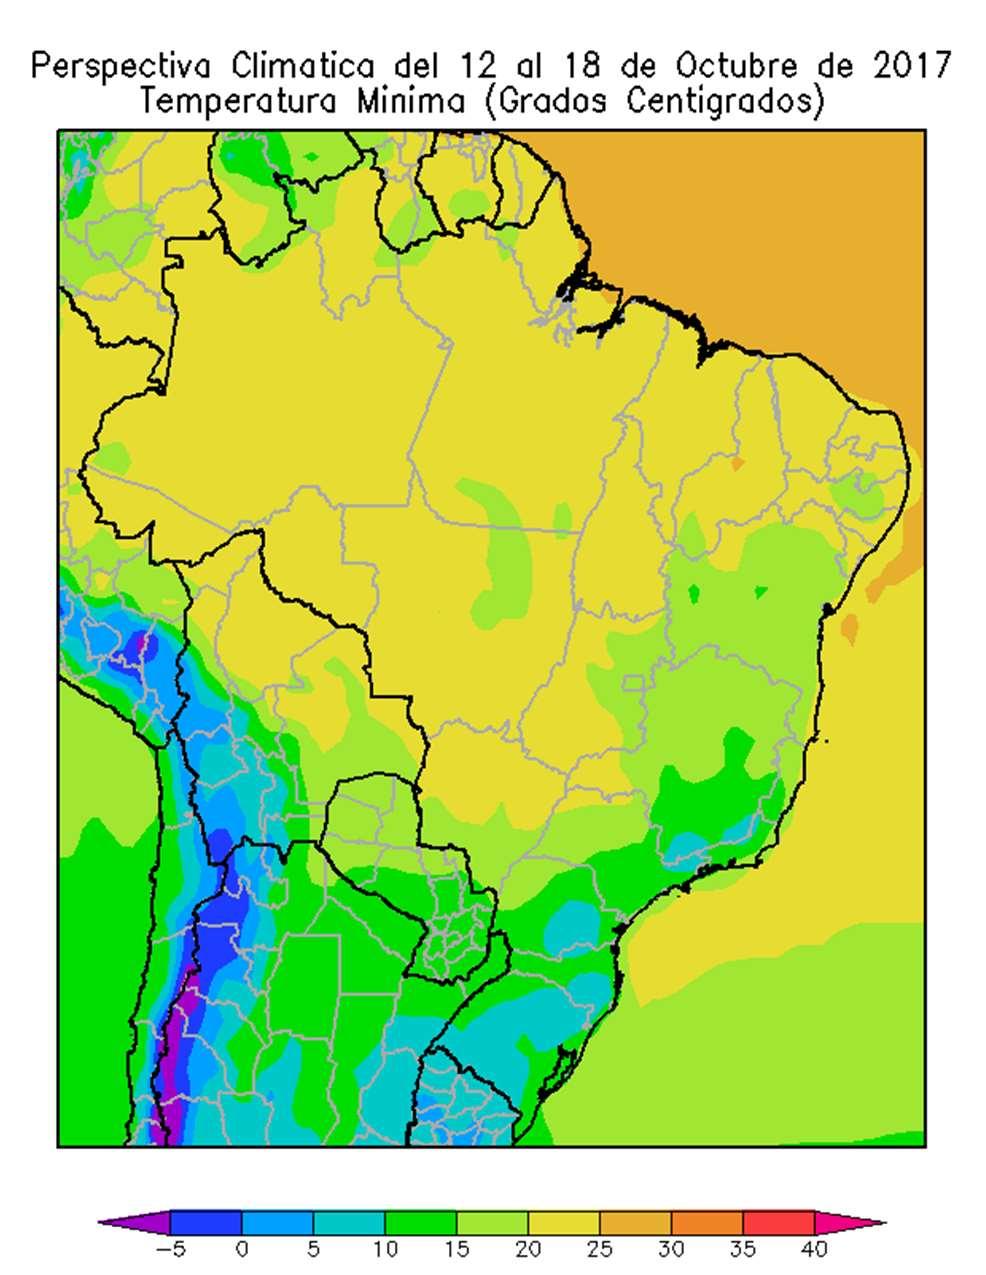 BRASIL Paralelamente, avanzarán los vientos del sur, provocando el descenso de la temperatura en el sur y el centro-este del área agrícola brasileña, mientras que el centro-oeste y todo el norte